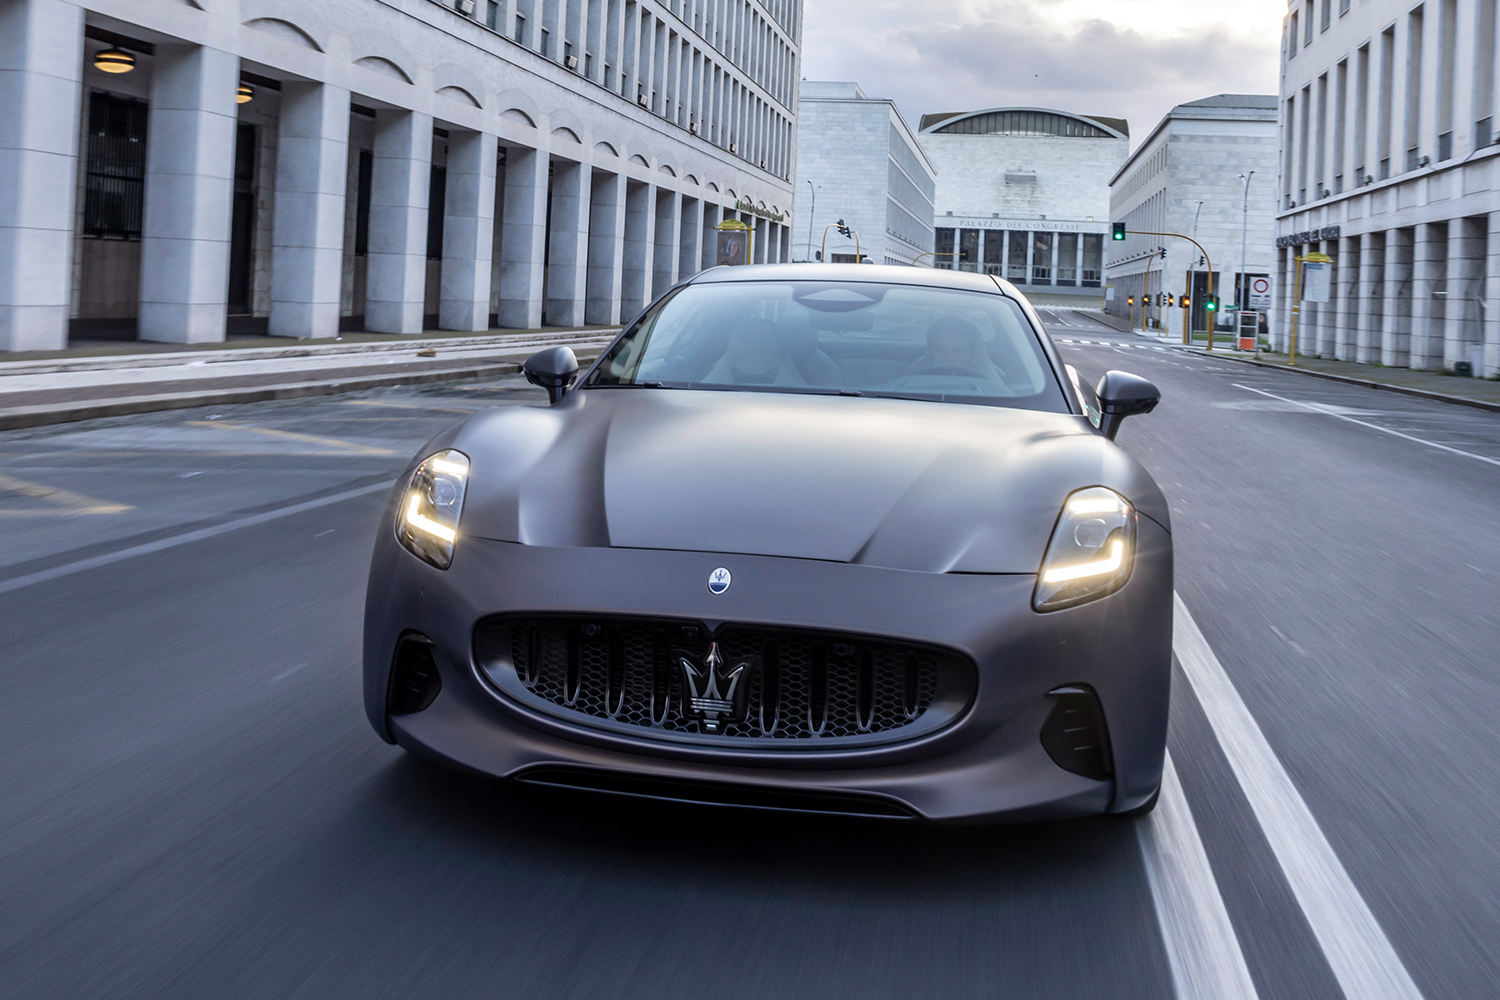 The new electric Maserati GranTurismo driving in Italy